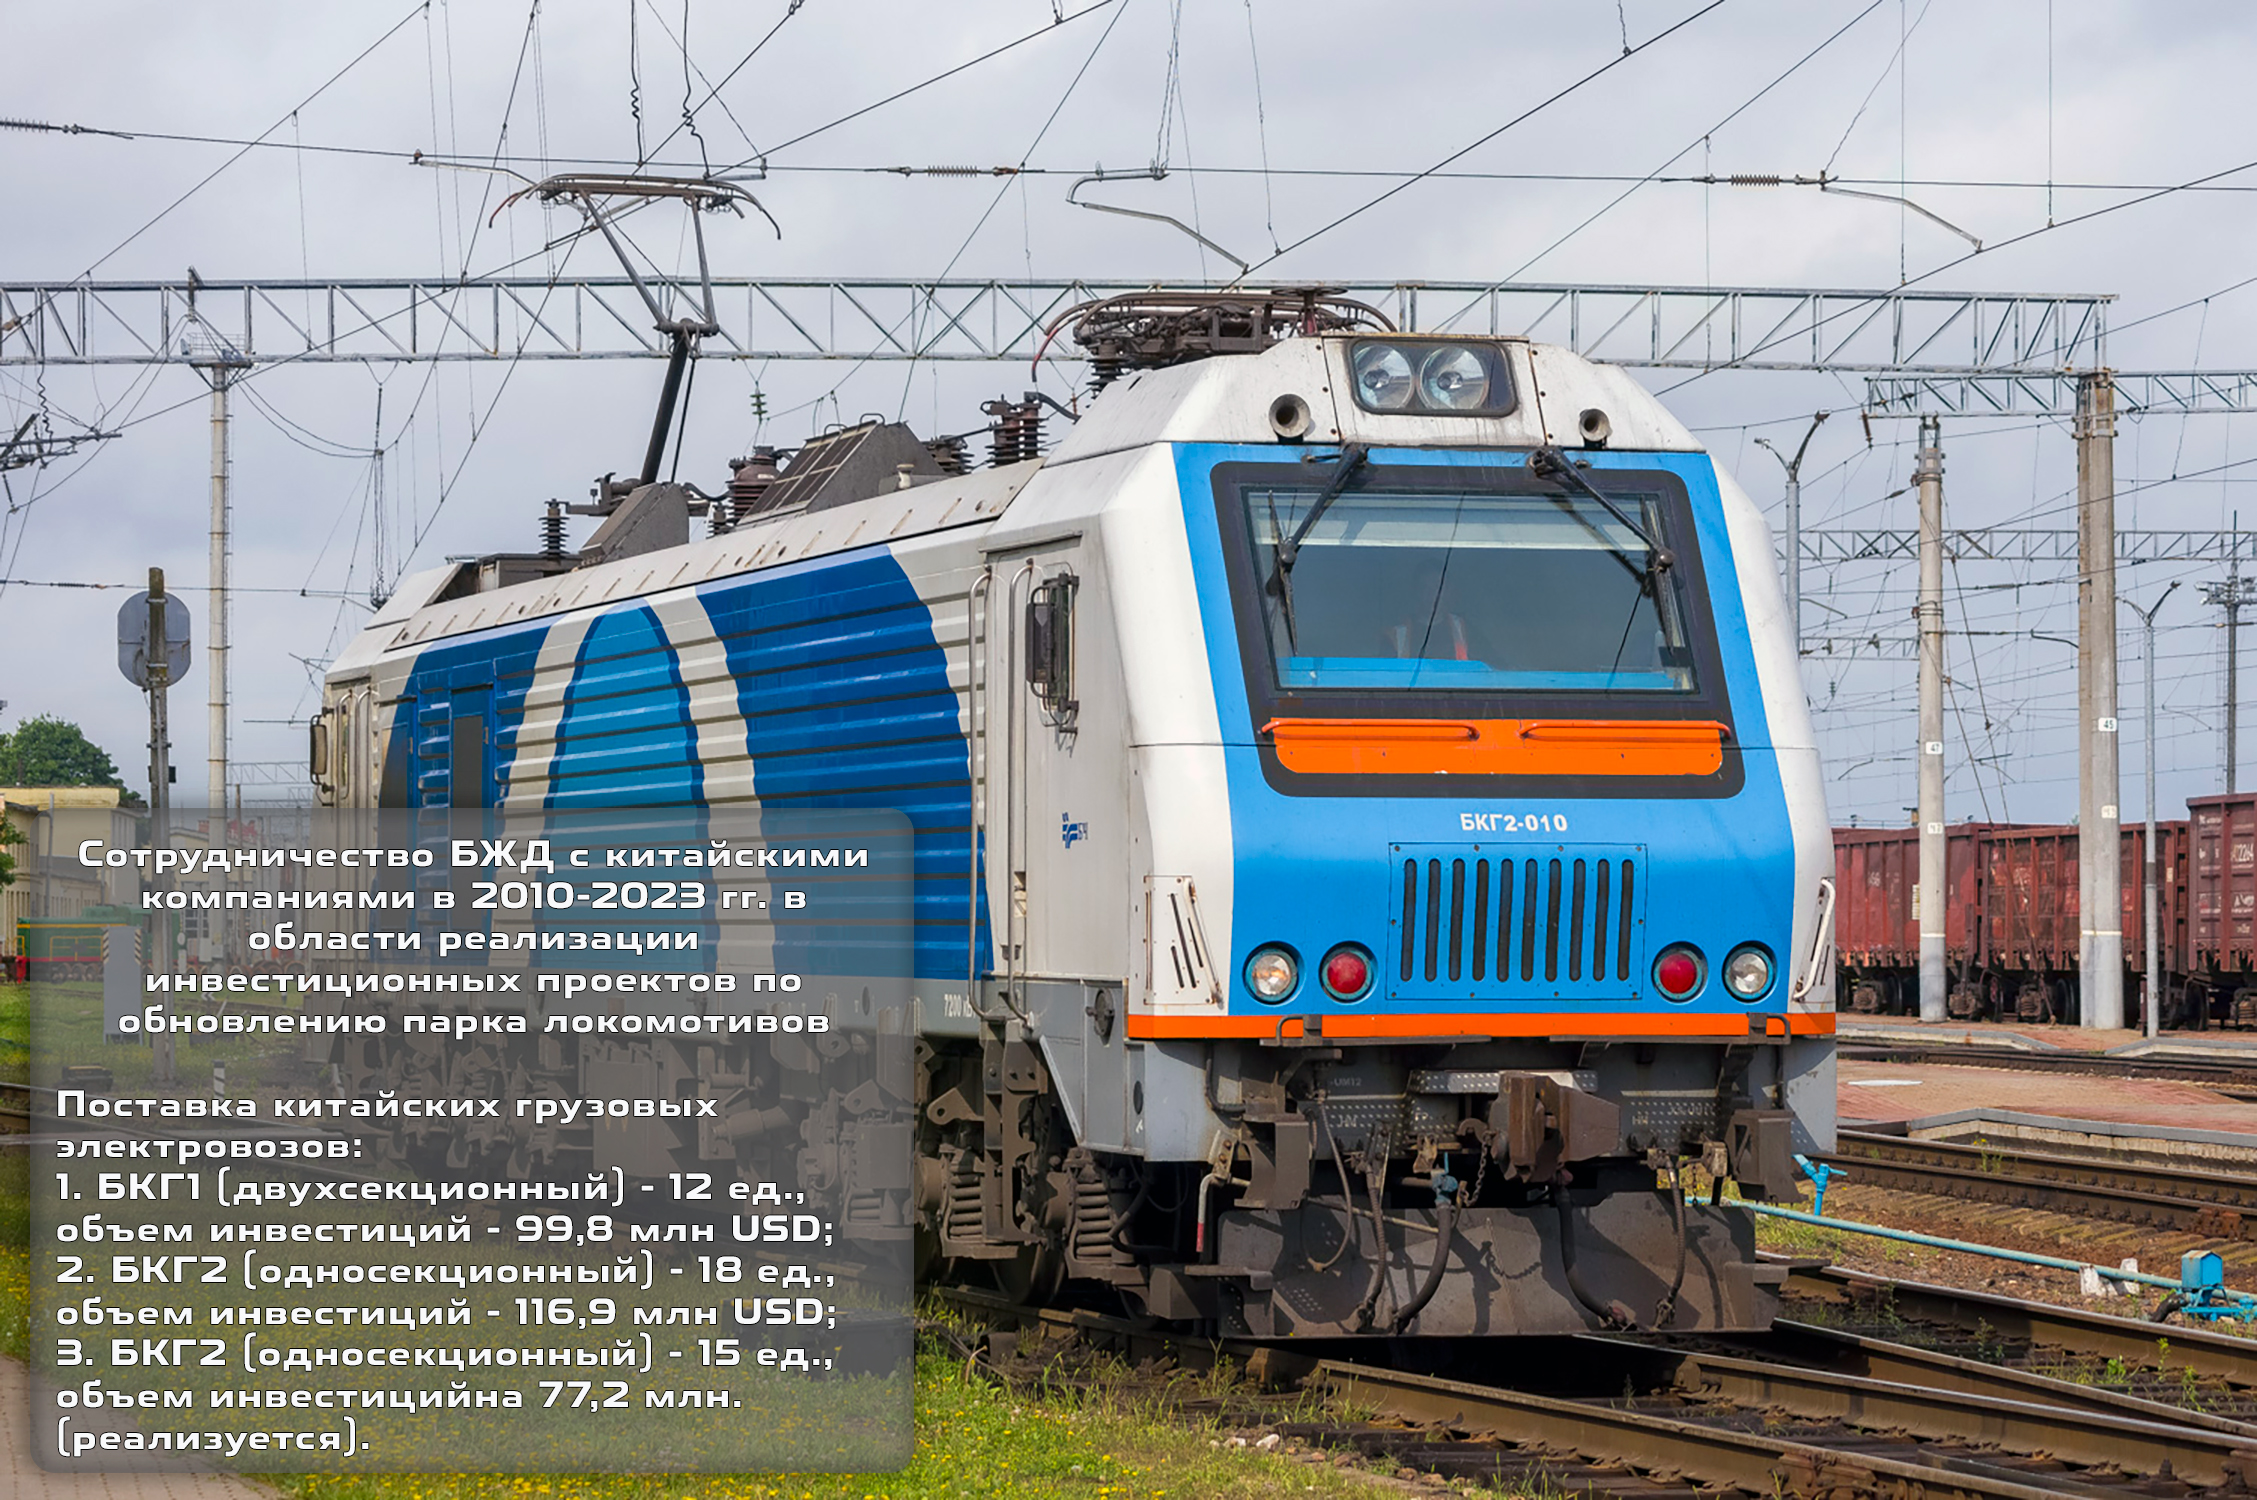 2_Сотрудничество БЖД с китайскими компаниями в 2010-2023 гг. в области реализации инвестиционных проектов по обновлению парка локомотивов.